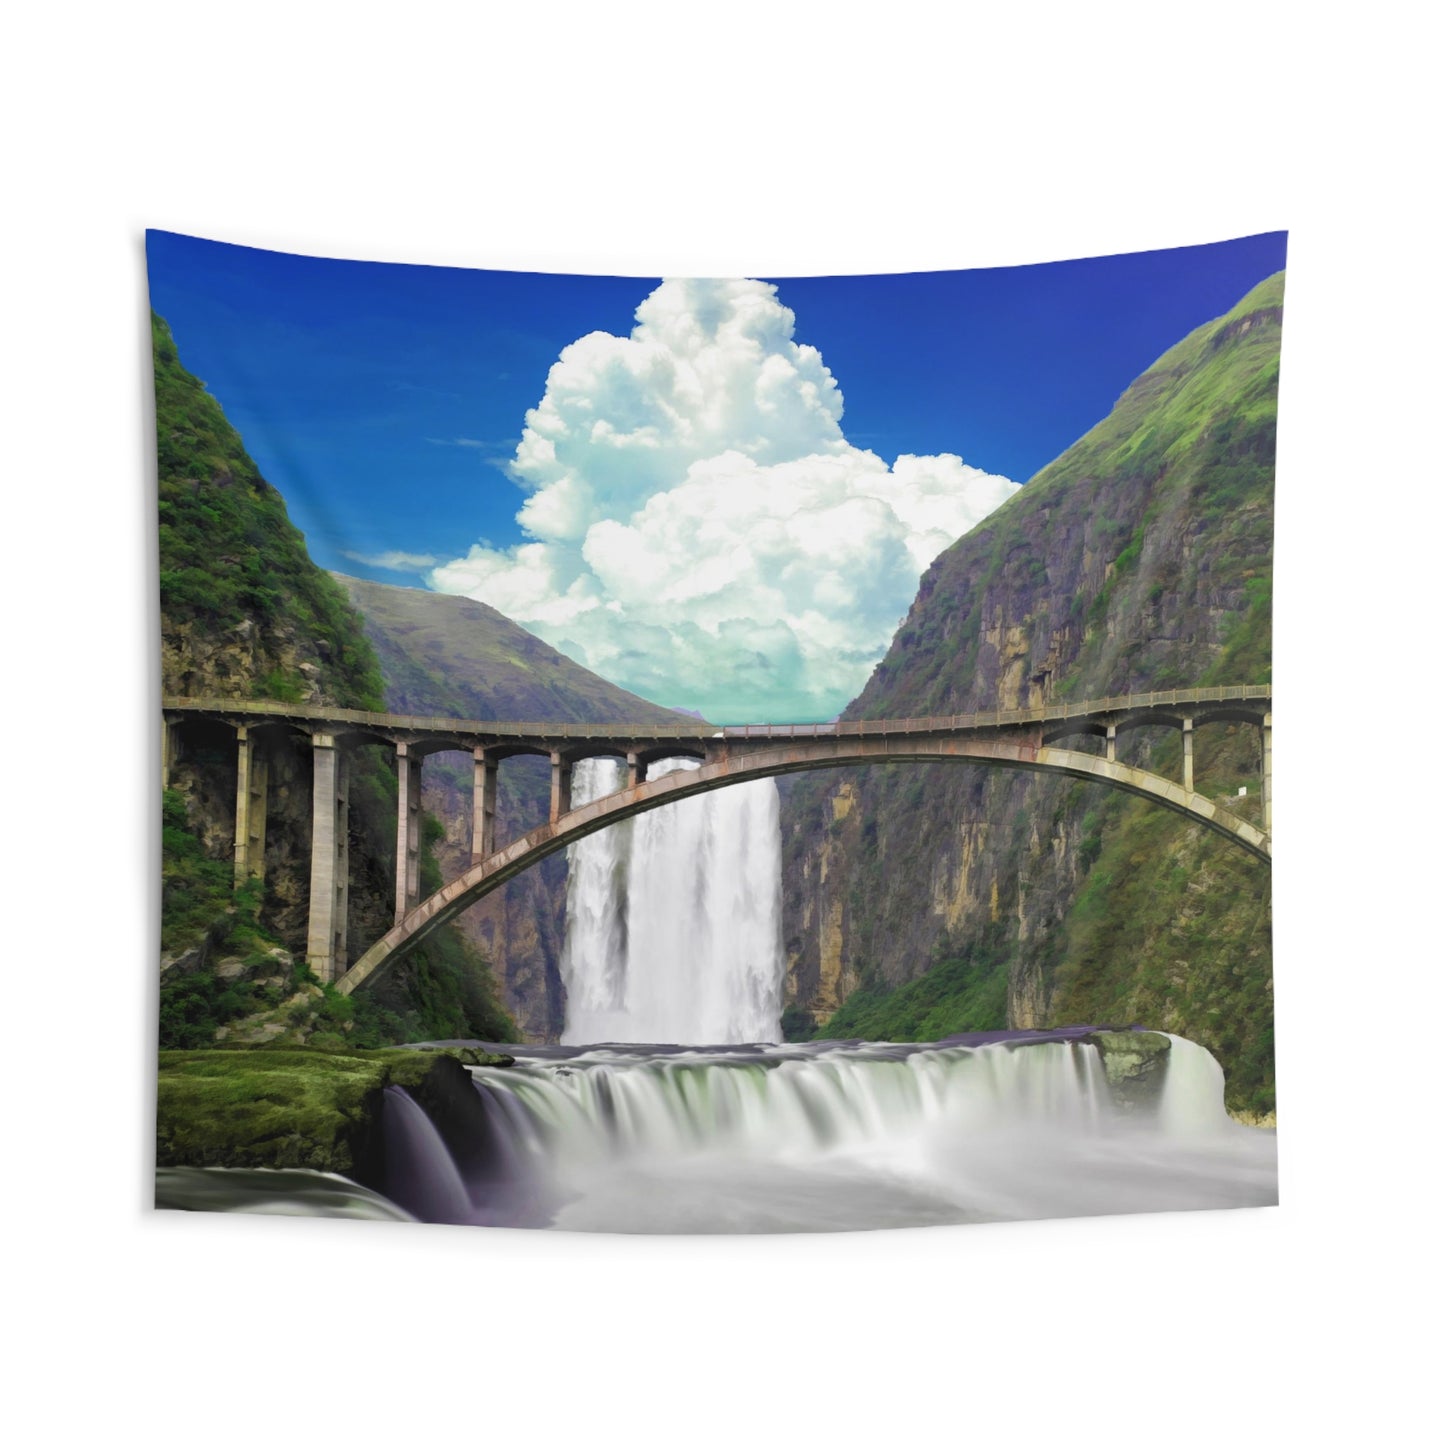 Waterfall over Bridge Tapestry